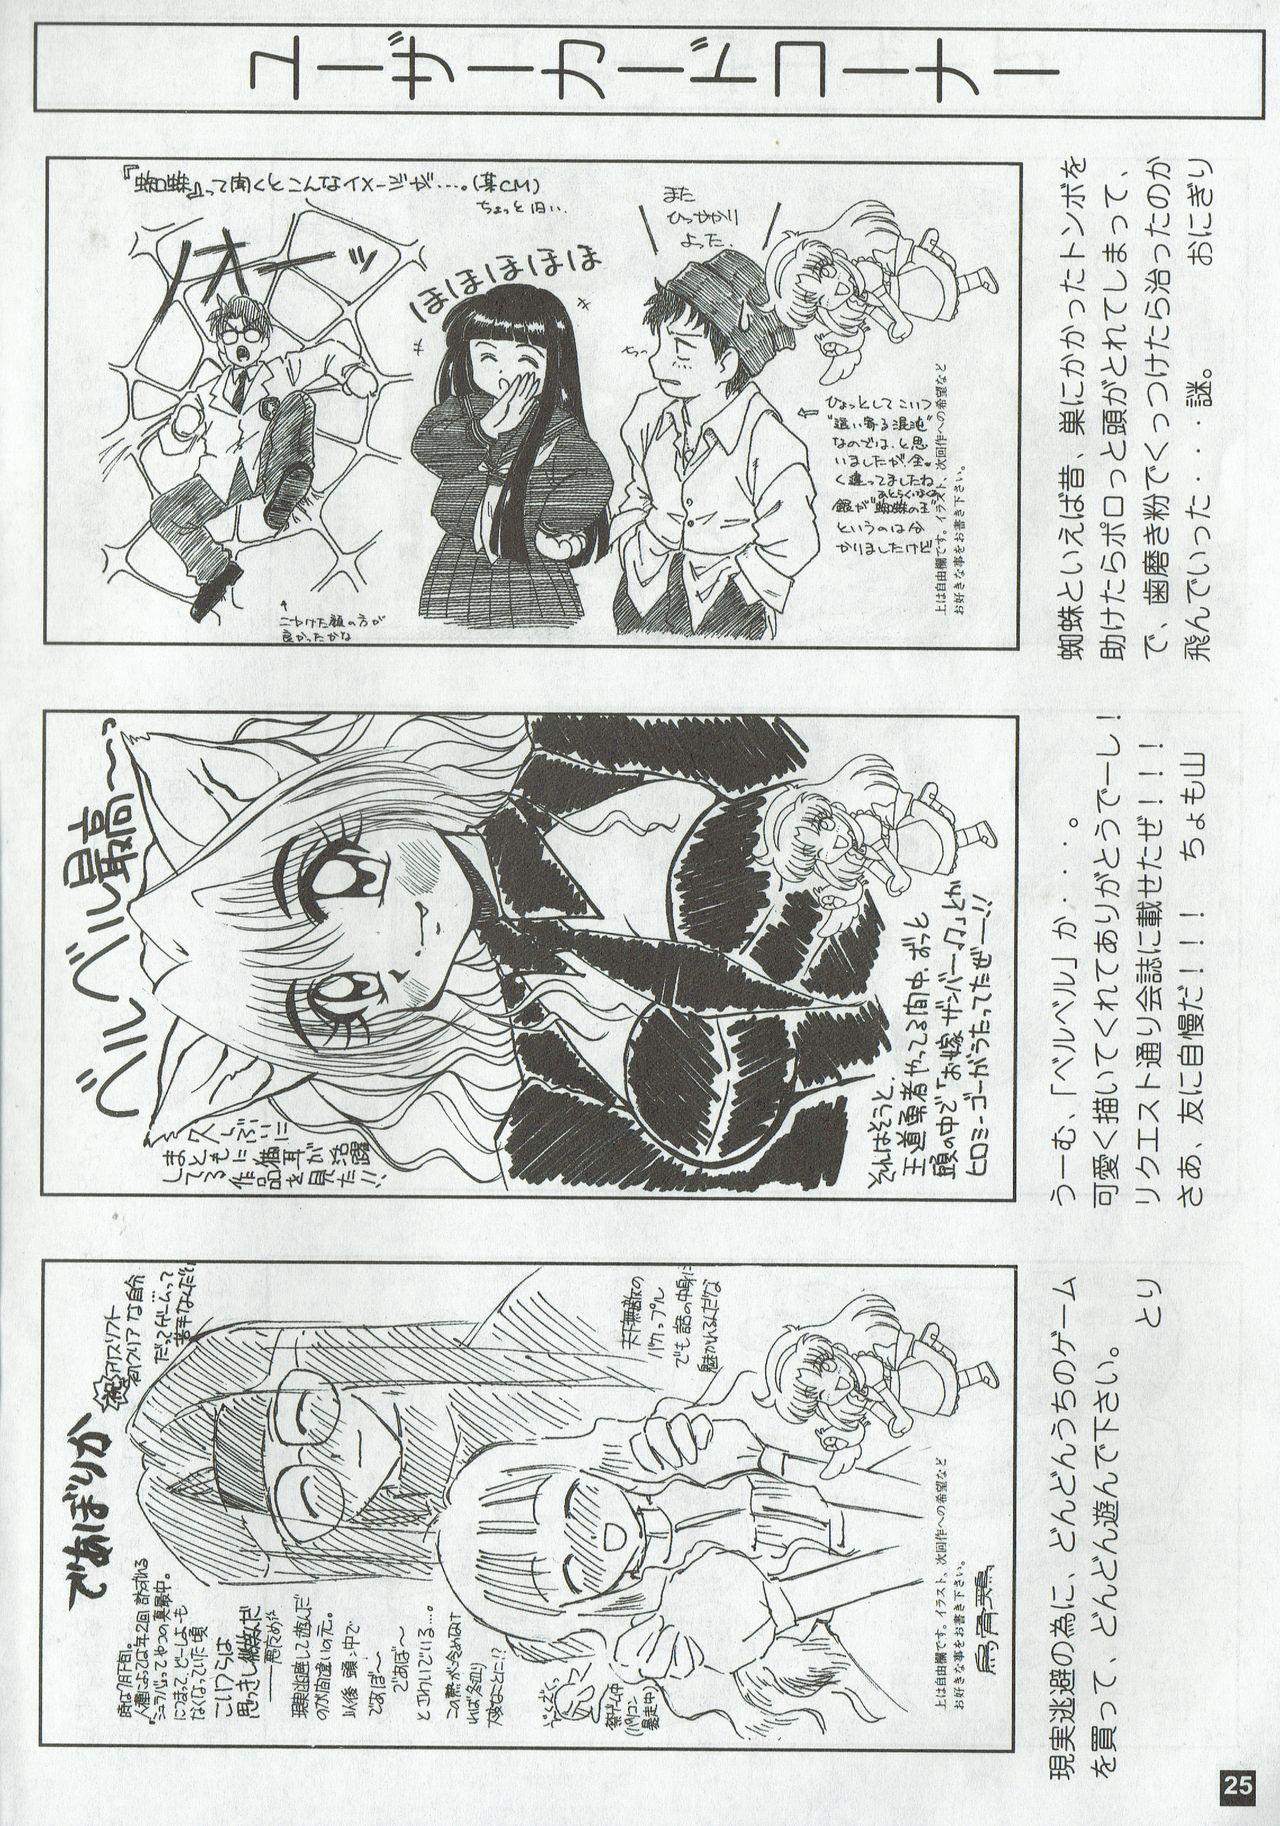 Arisu no Denchi Bakudan Vol. 02 24